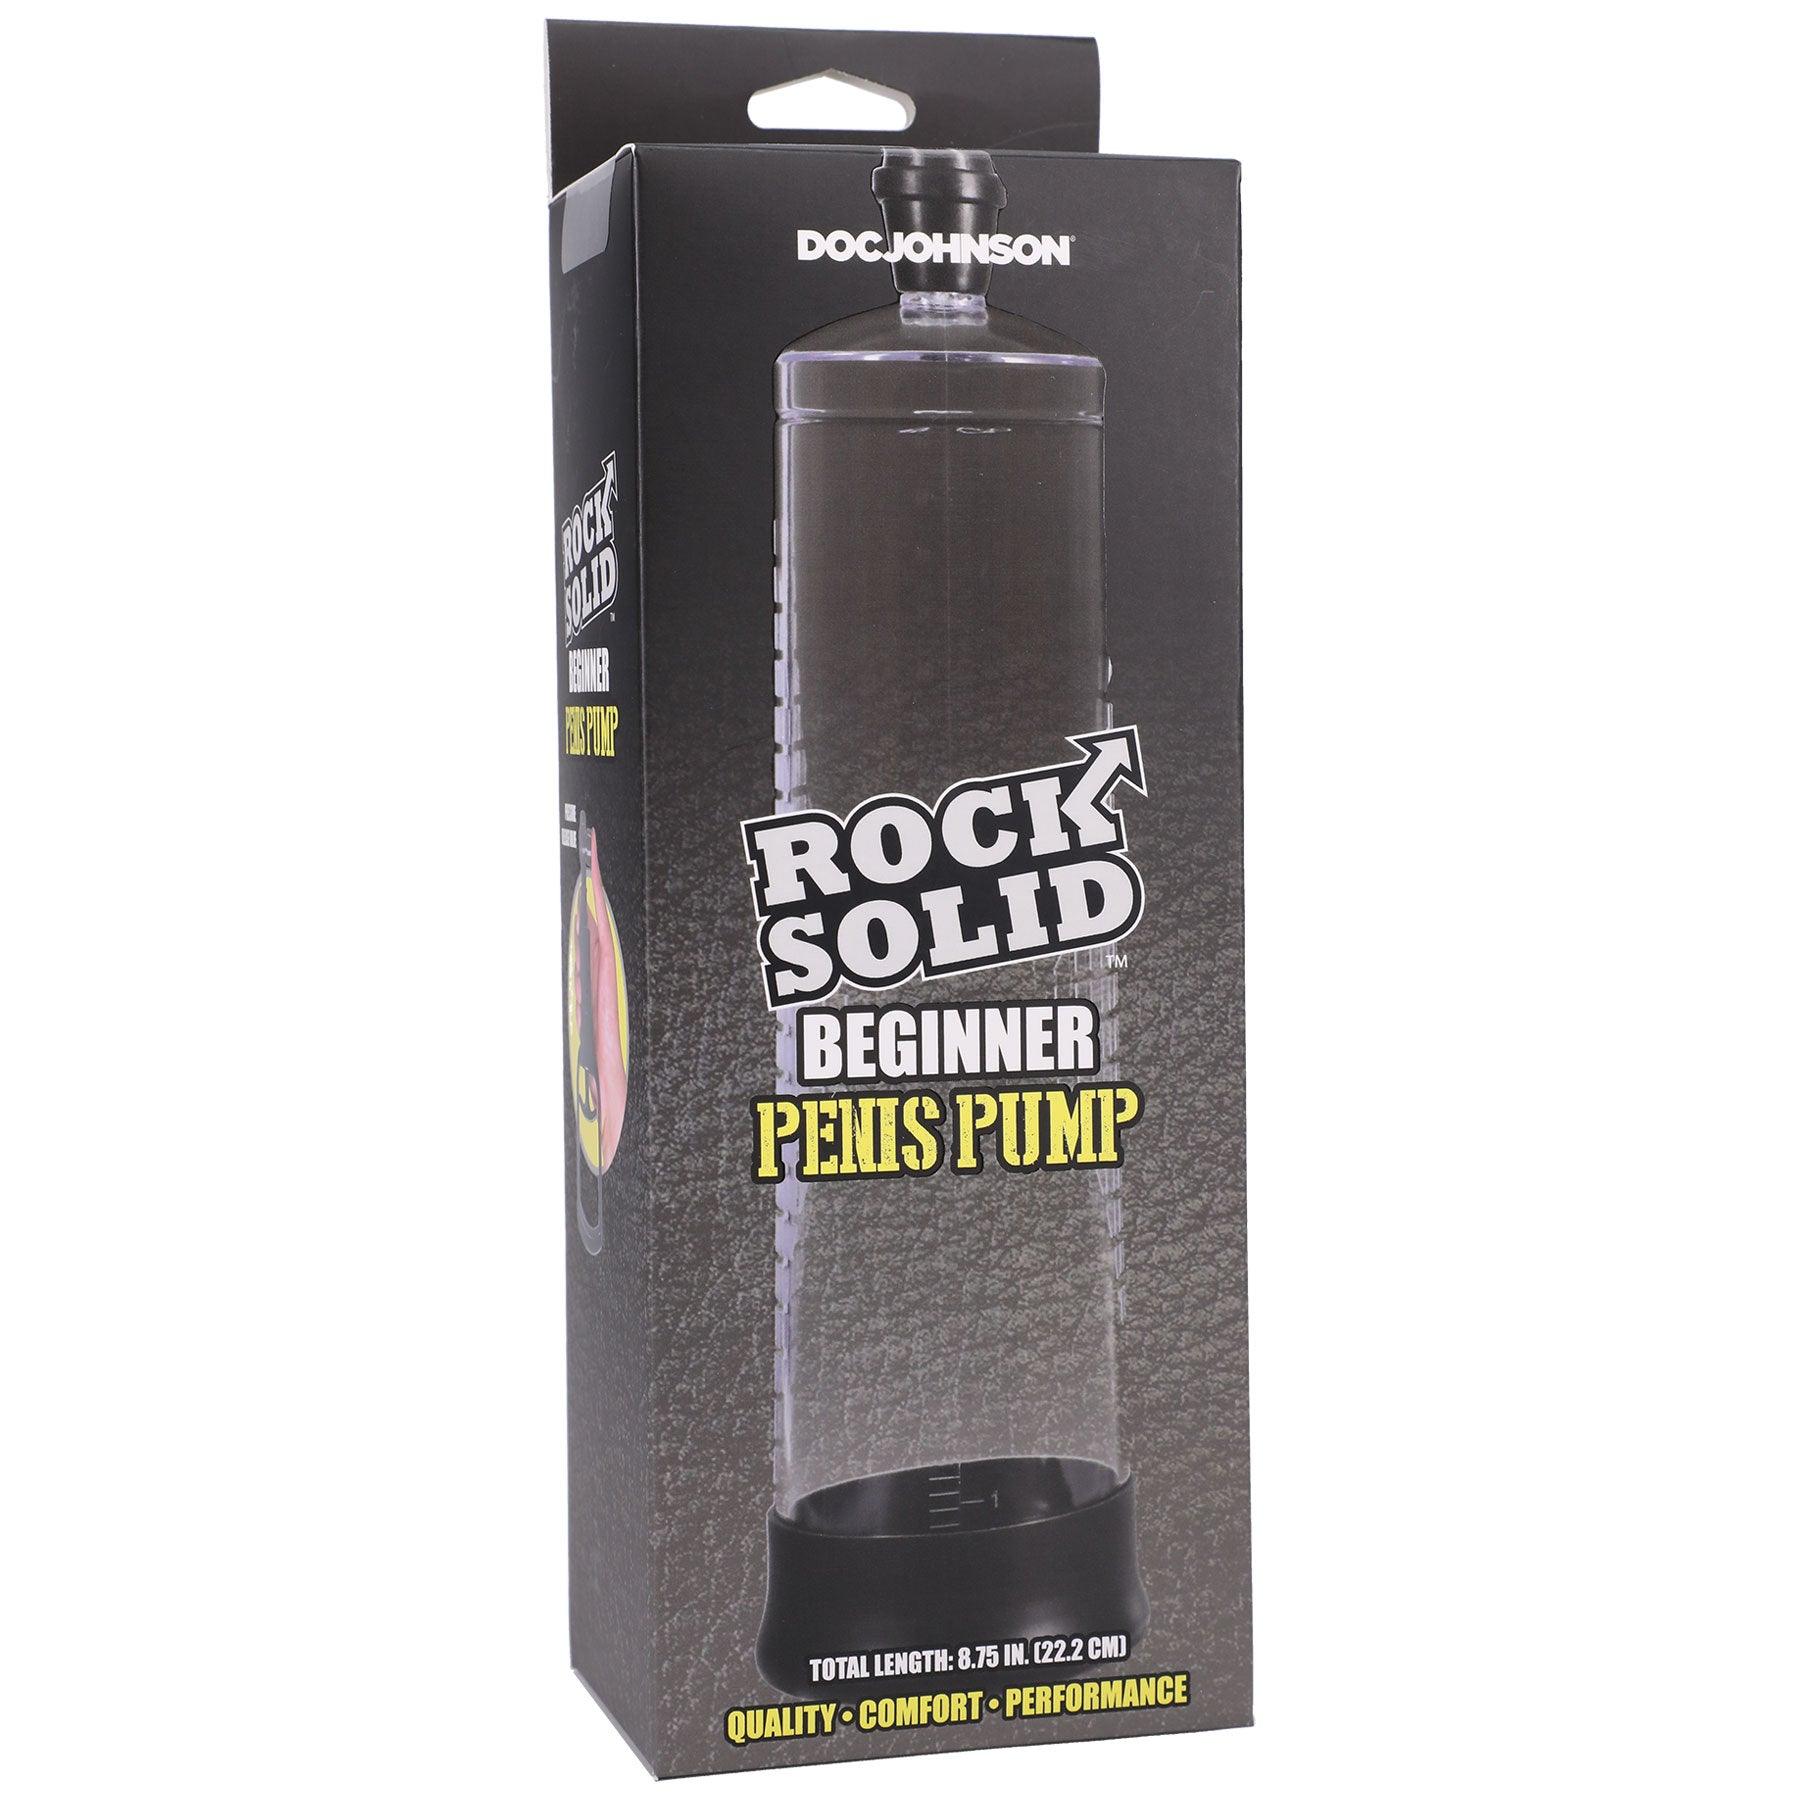 Rock Solid - Beginner Penis Pump - Black/clear - My Sex Toy Hub